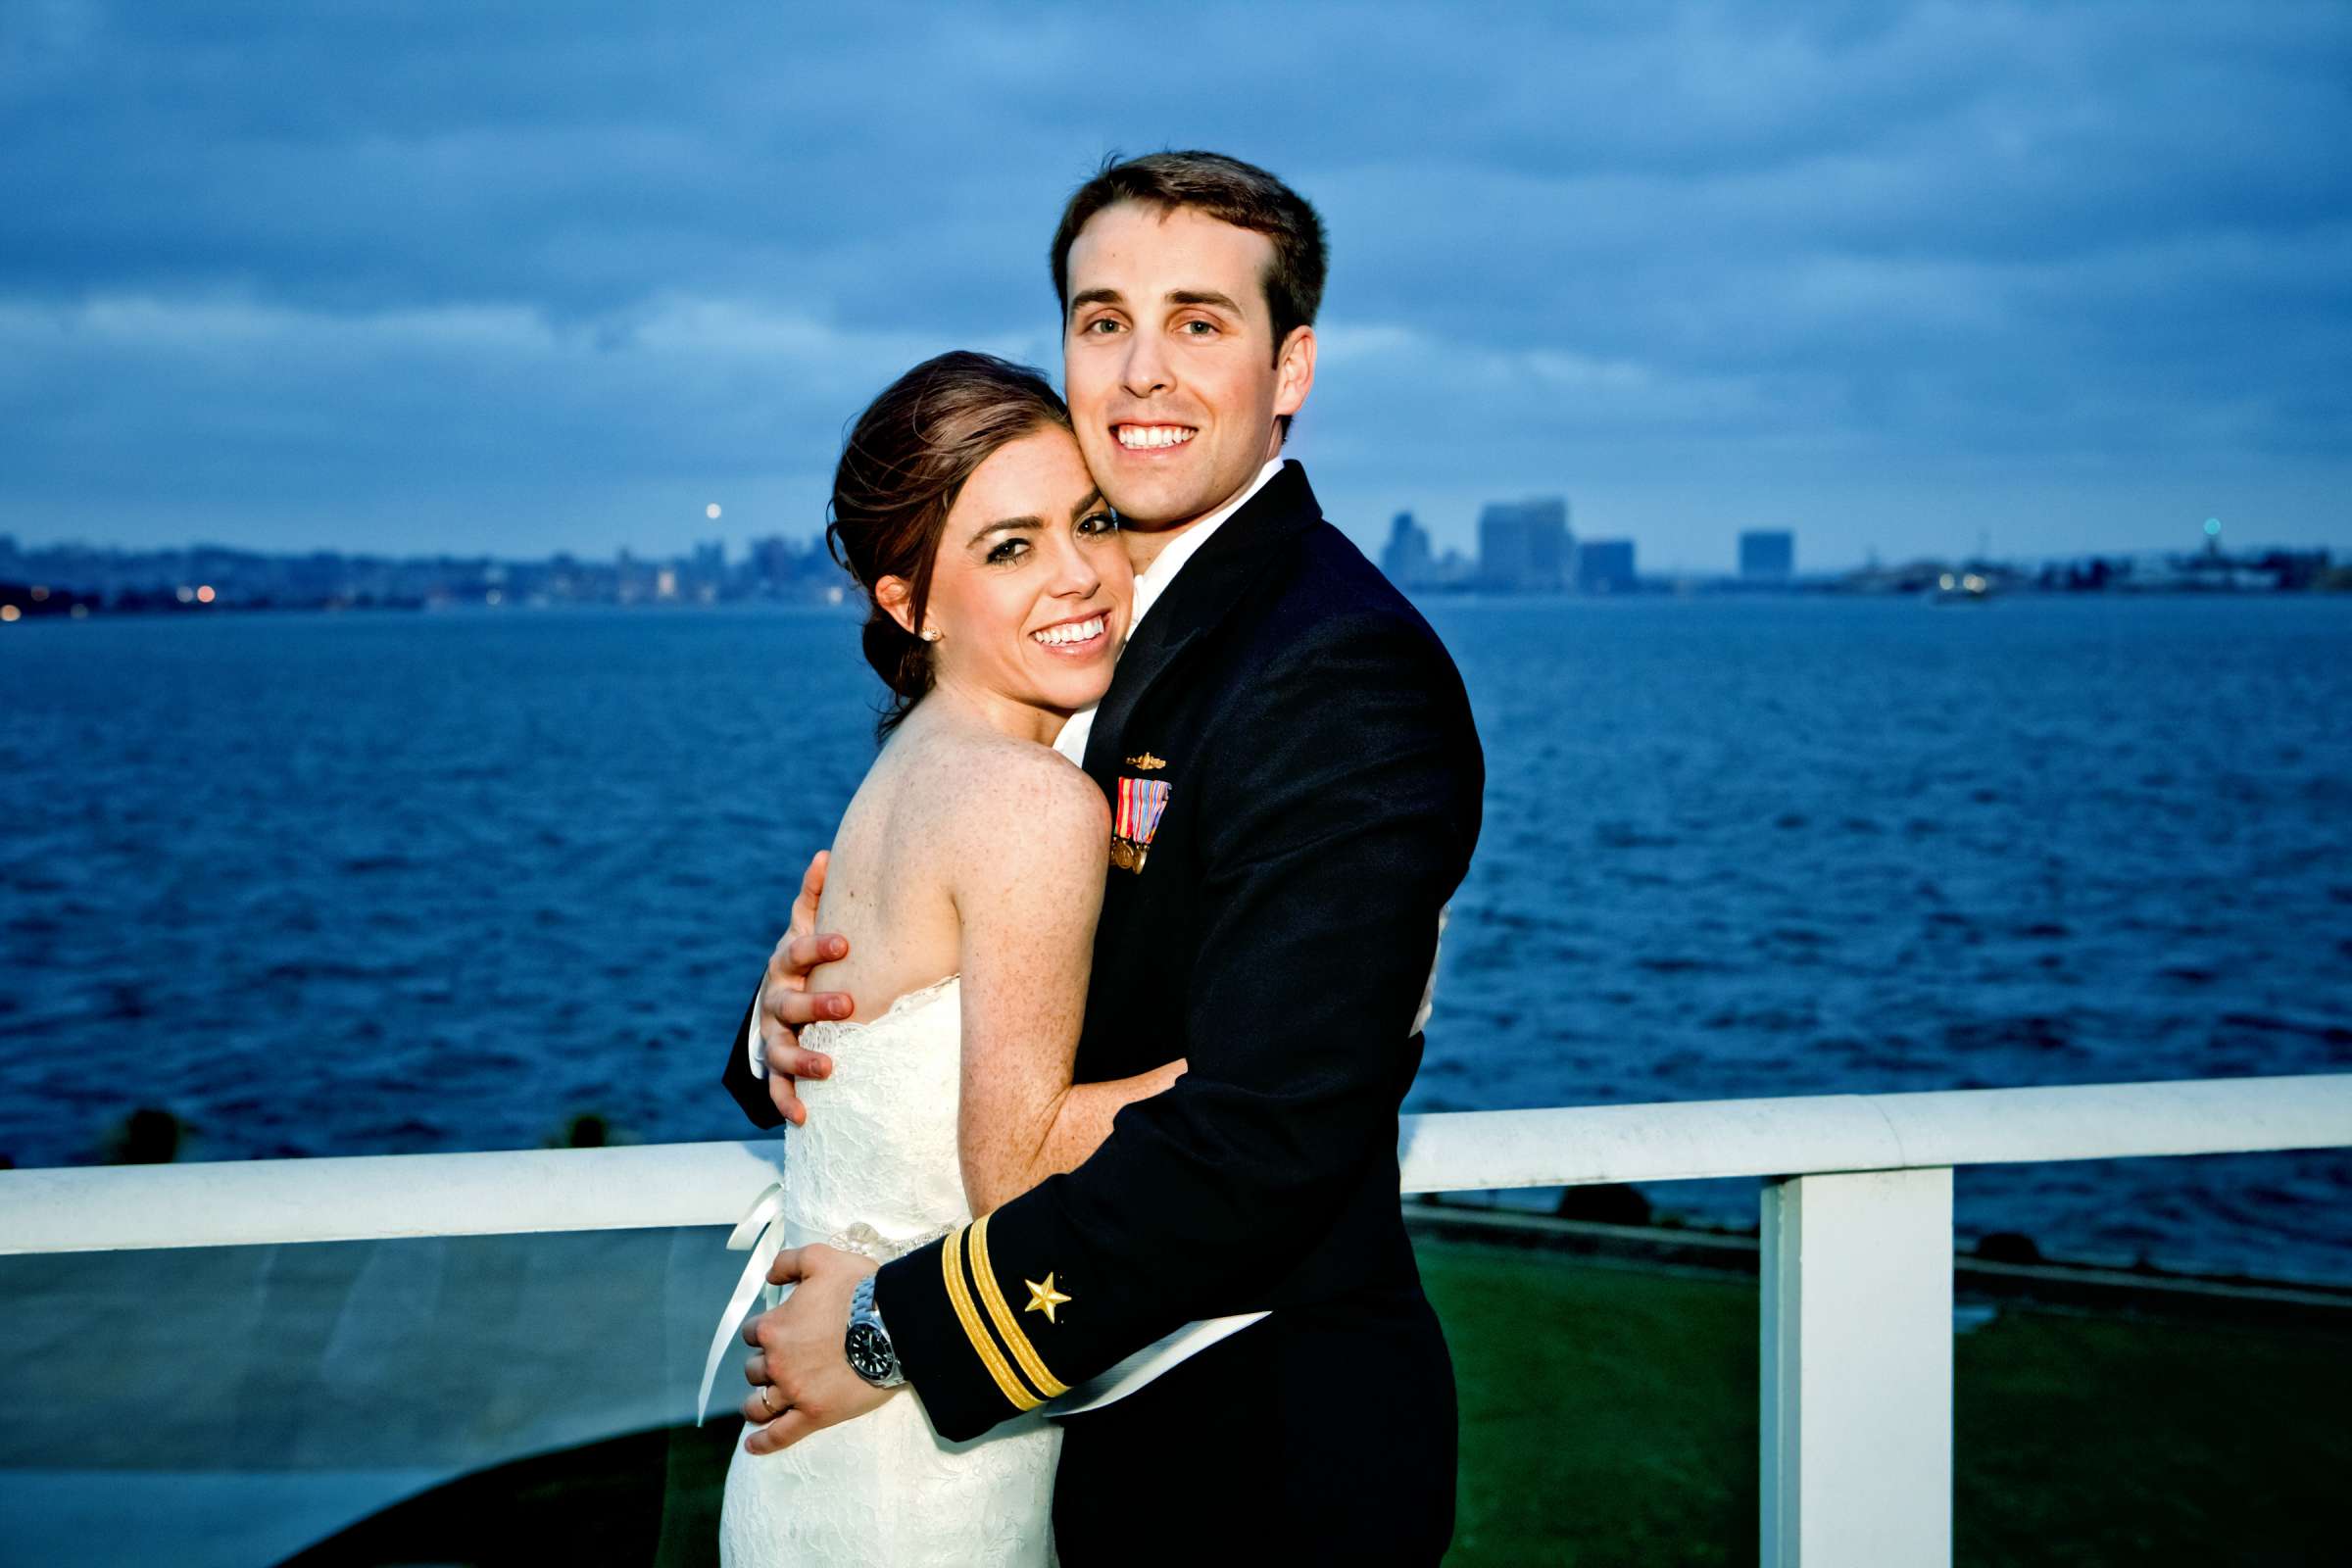 Admiral Kidd Club Wedding coordinated by I Do Weddings, Ashley and Rhett Wedding Photo #358420 by True Photography